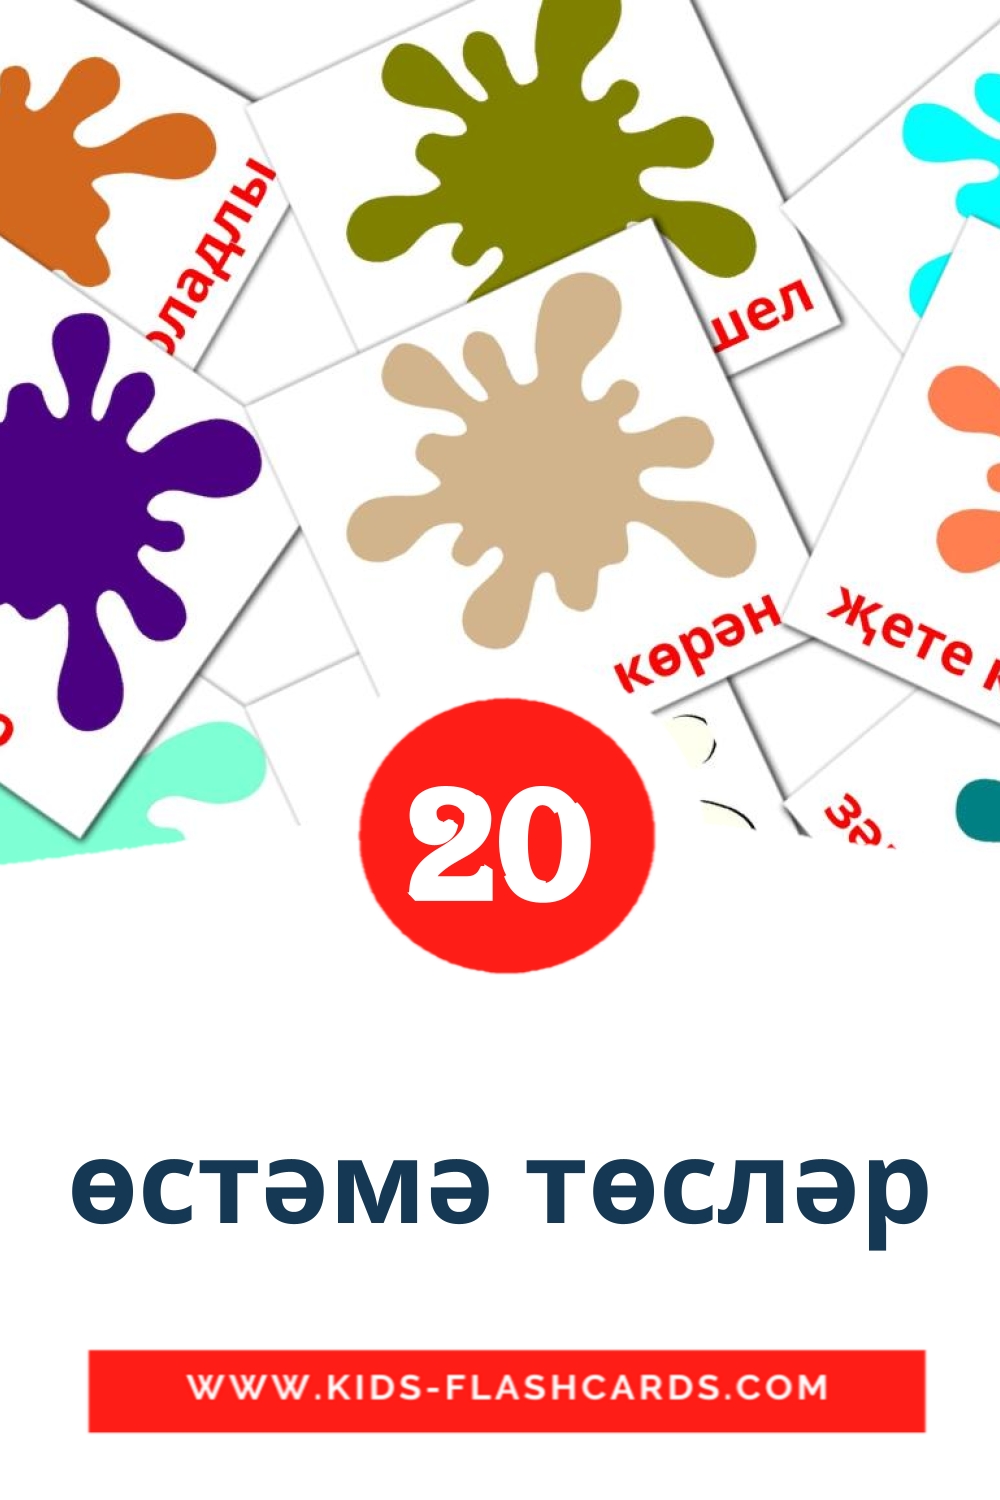 20 Cartões com Imagens de Өстәмә төсләр para Jardim de Infância em tatar